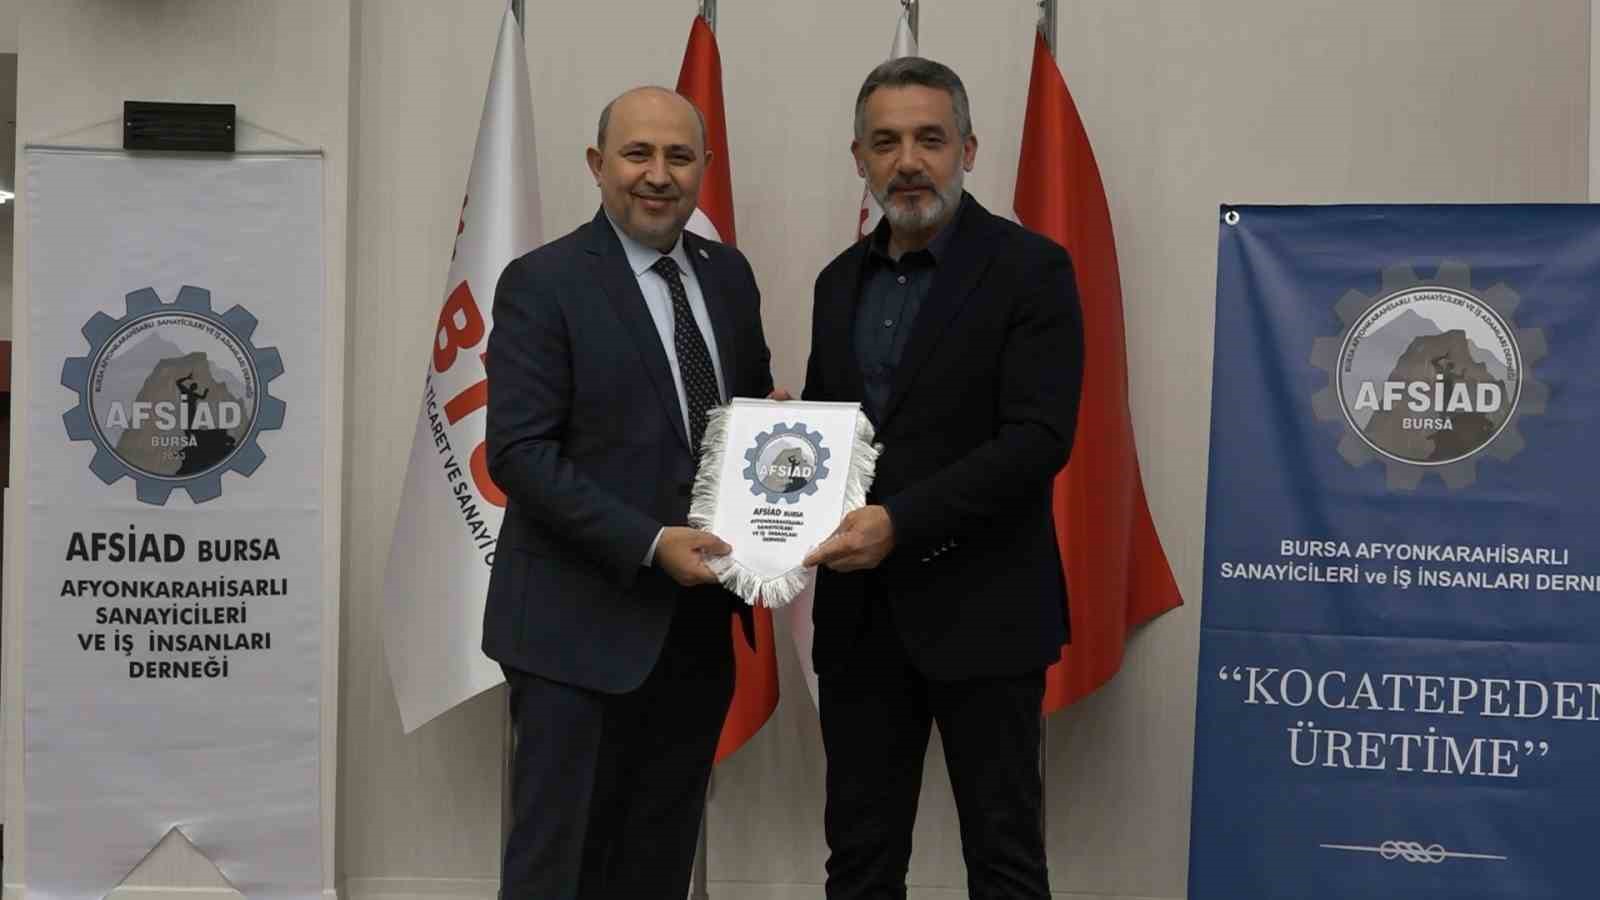 Bursa AFSİAD Yönetim Kurulu Başkanı Dr. İlker Duran Güven tazeledi
